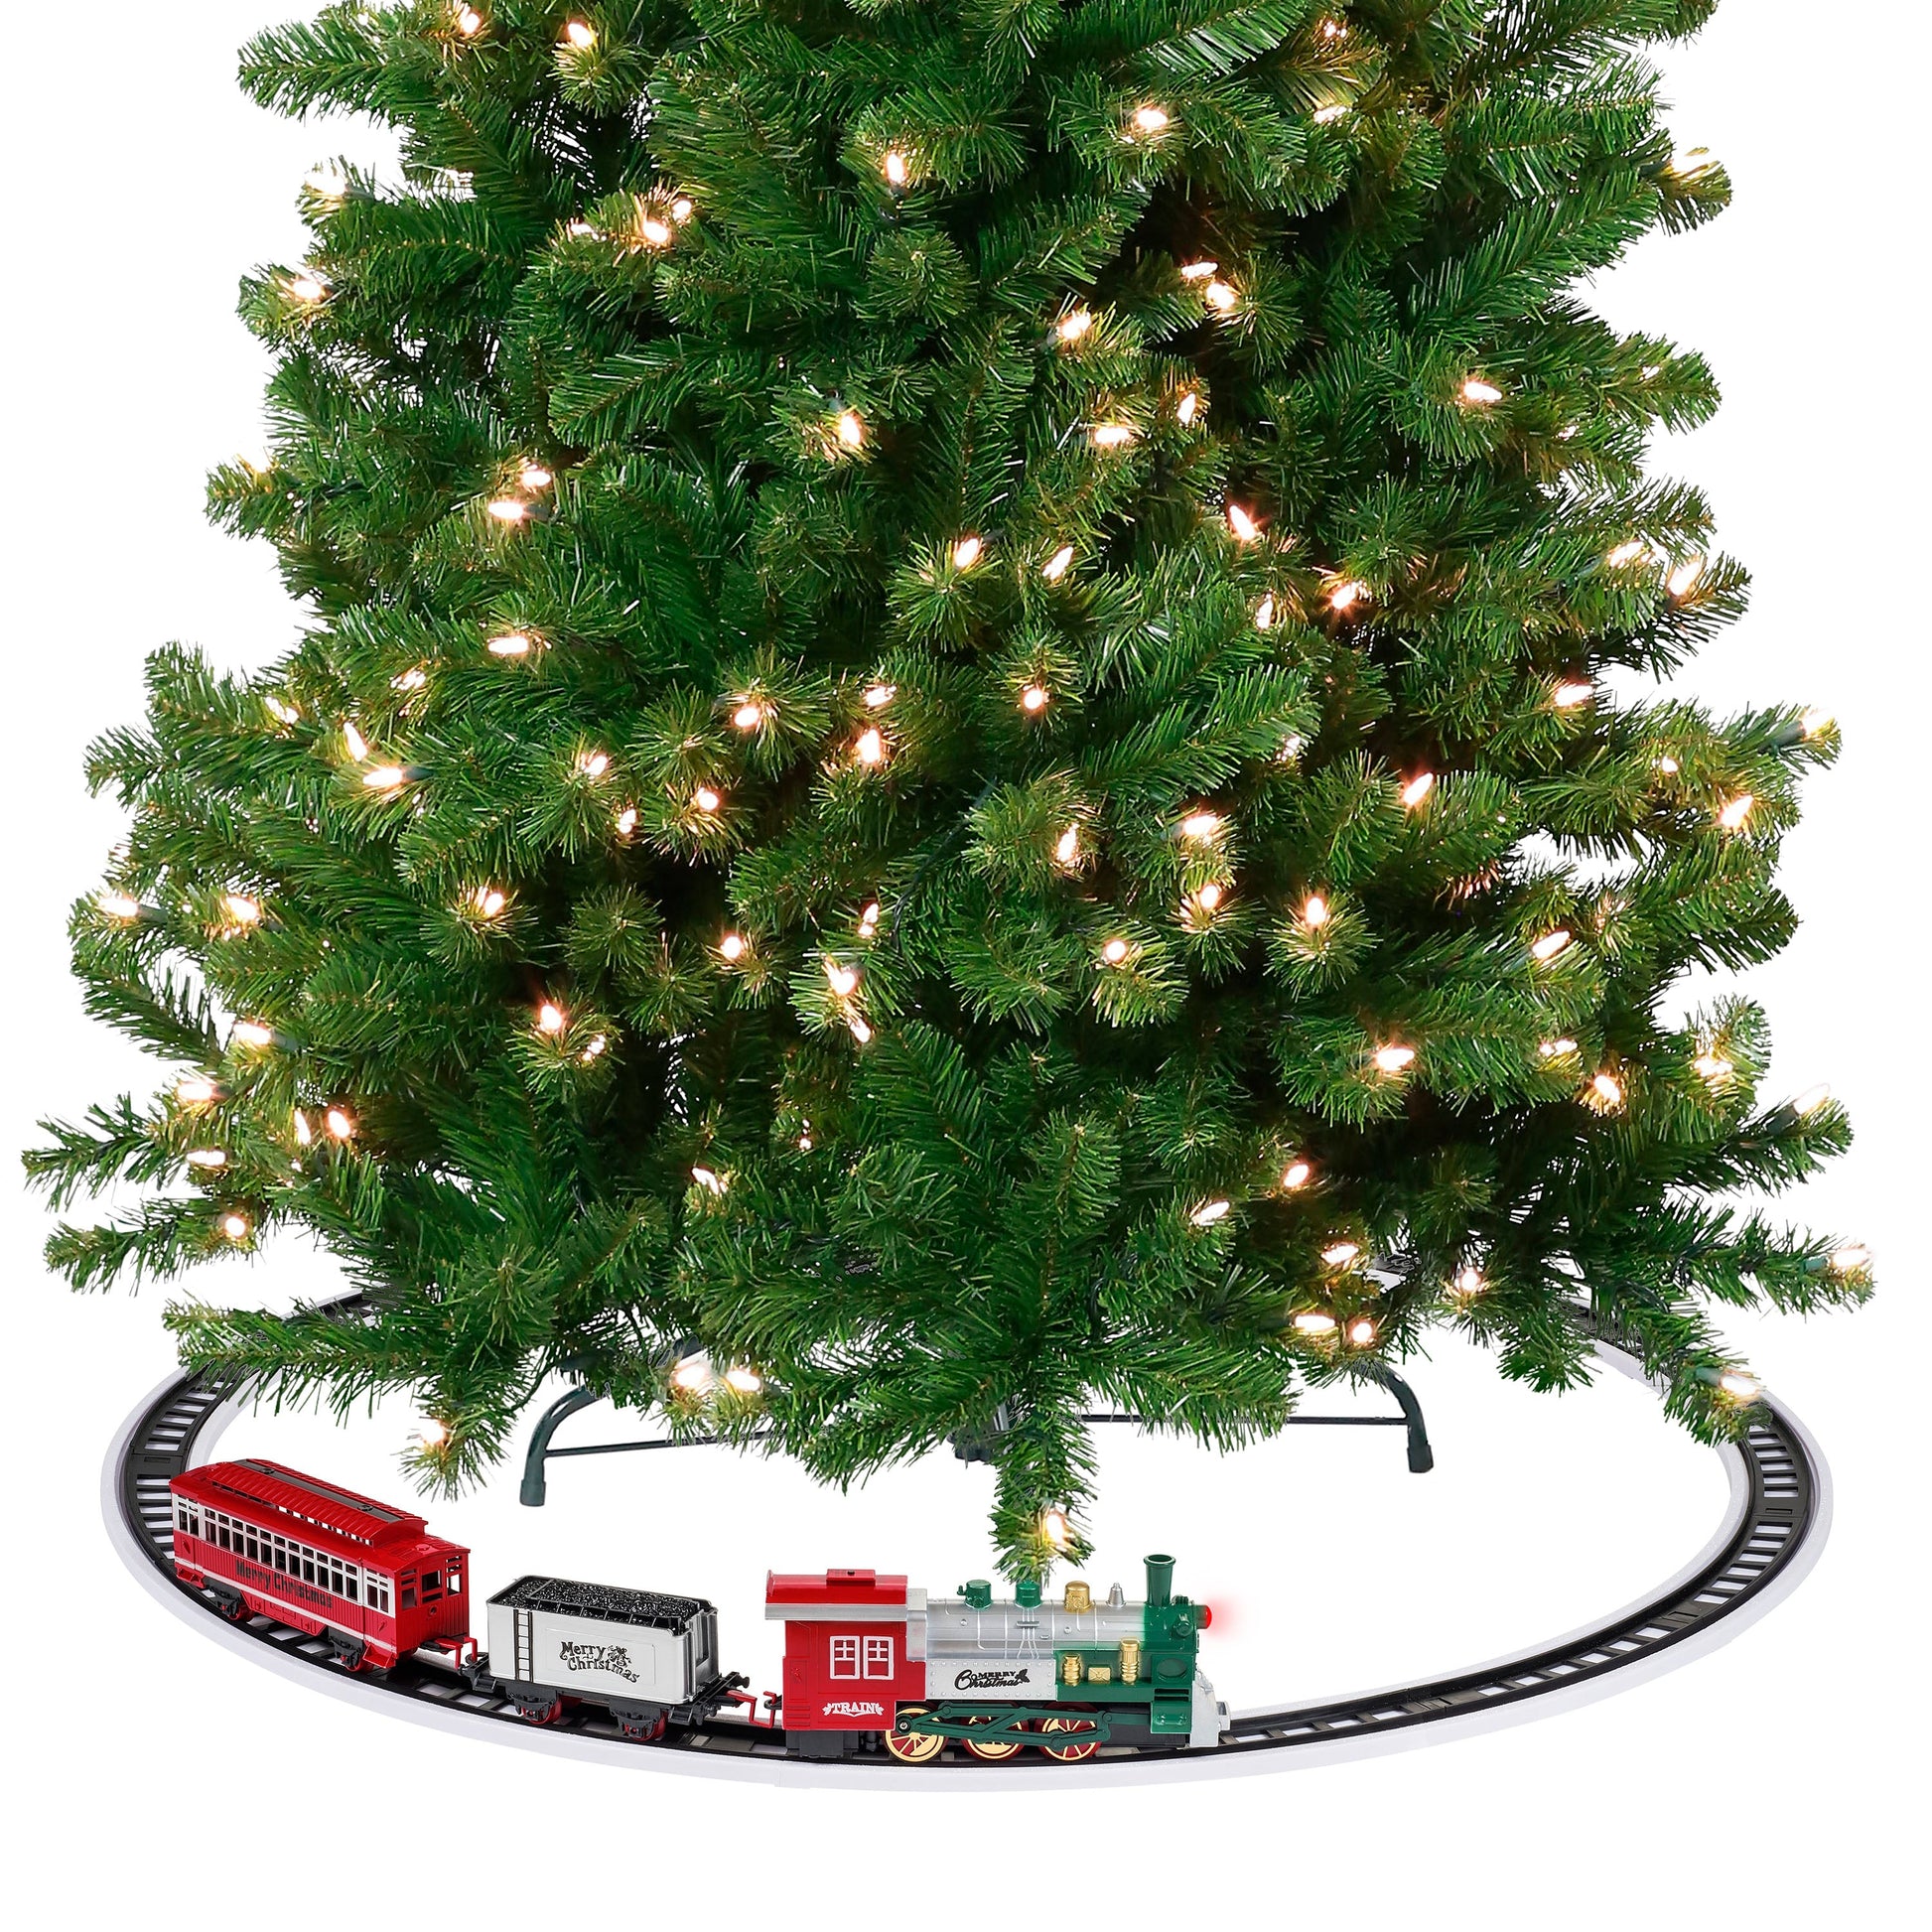 Animated Train Around The Tree - Mr. Christmas